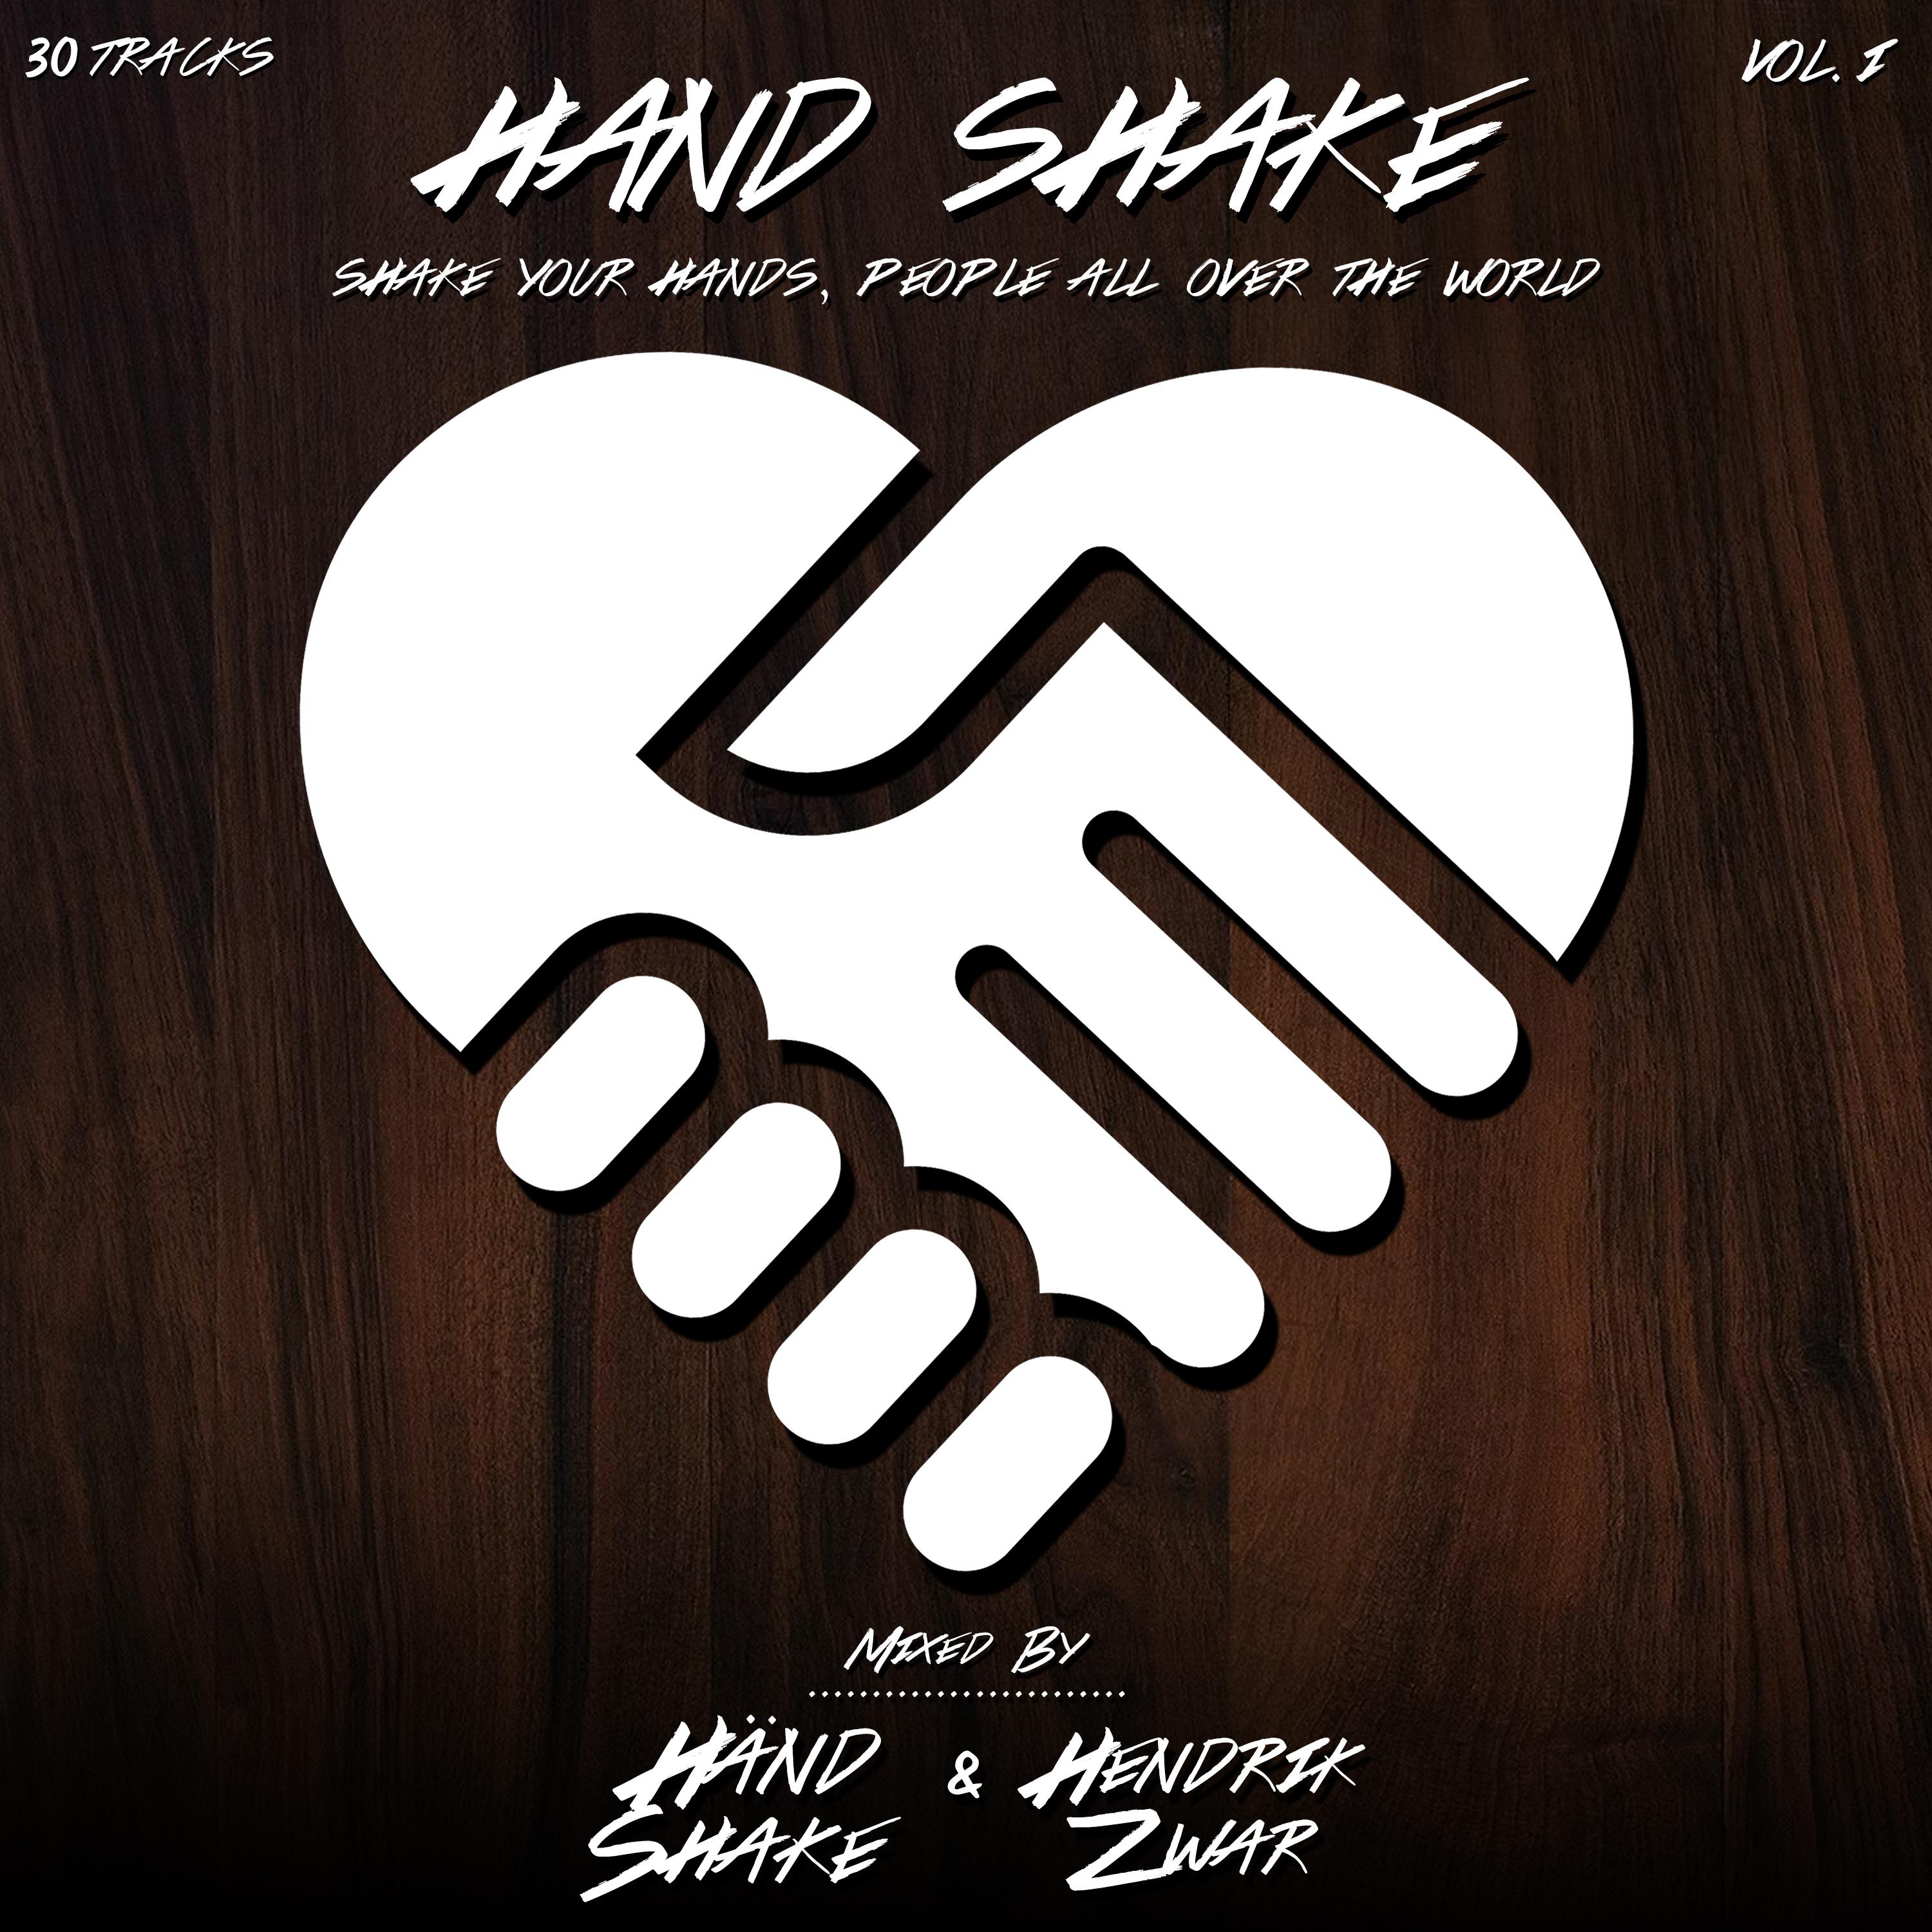 Hand-Shake, Vol. 1